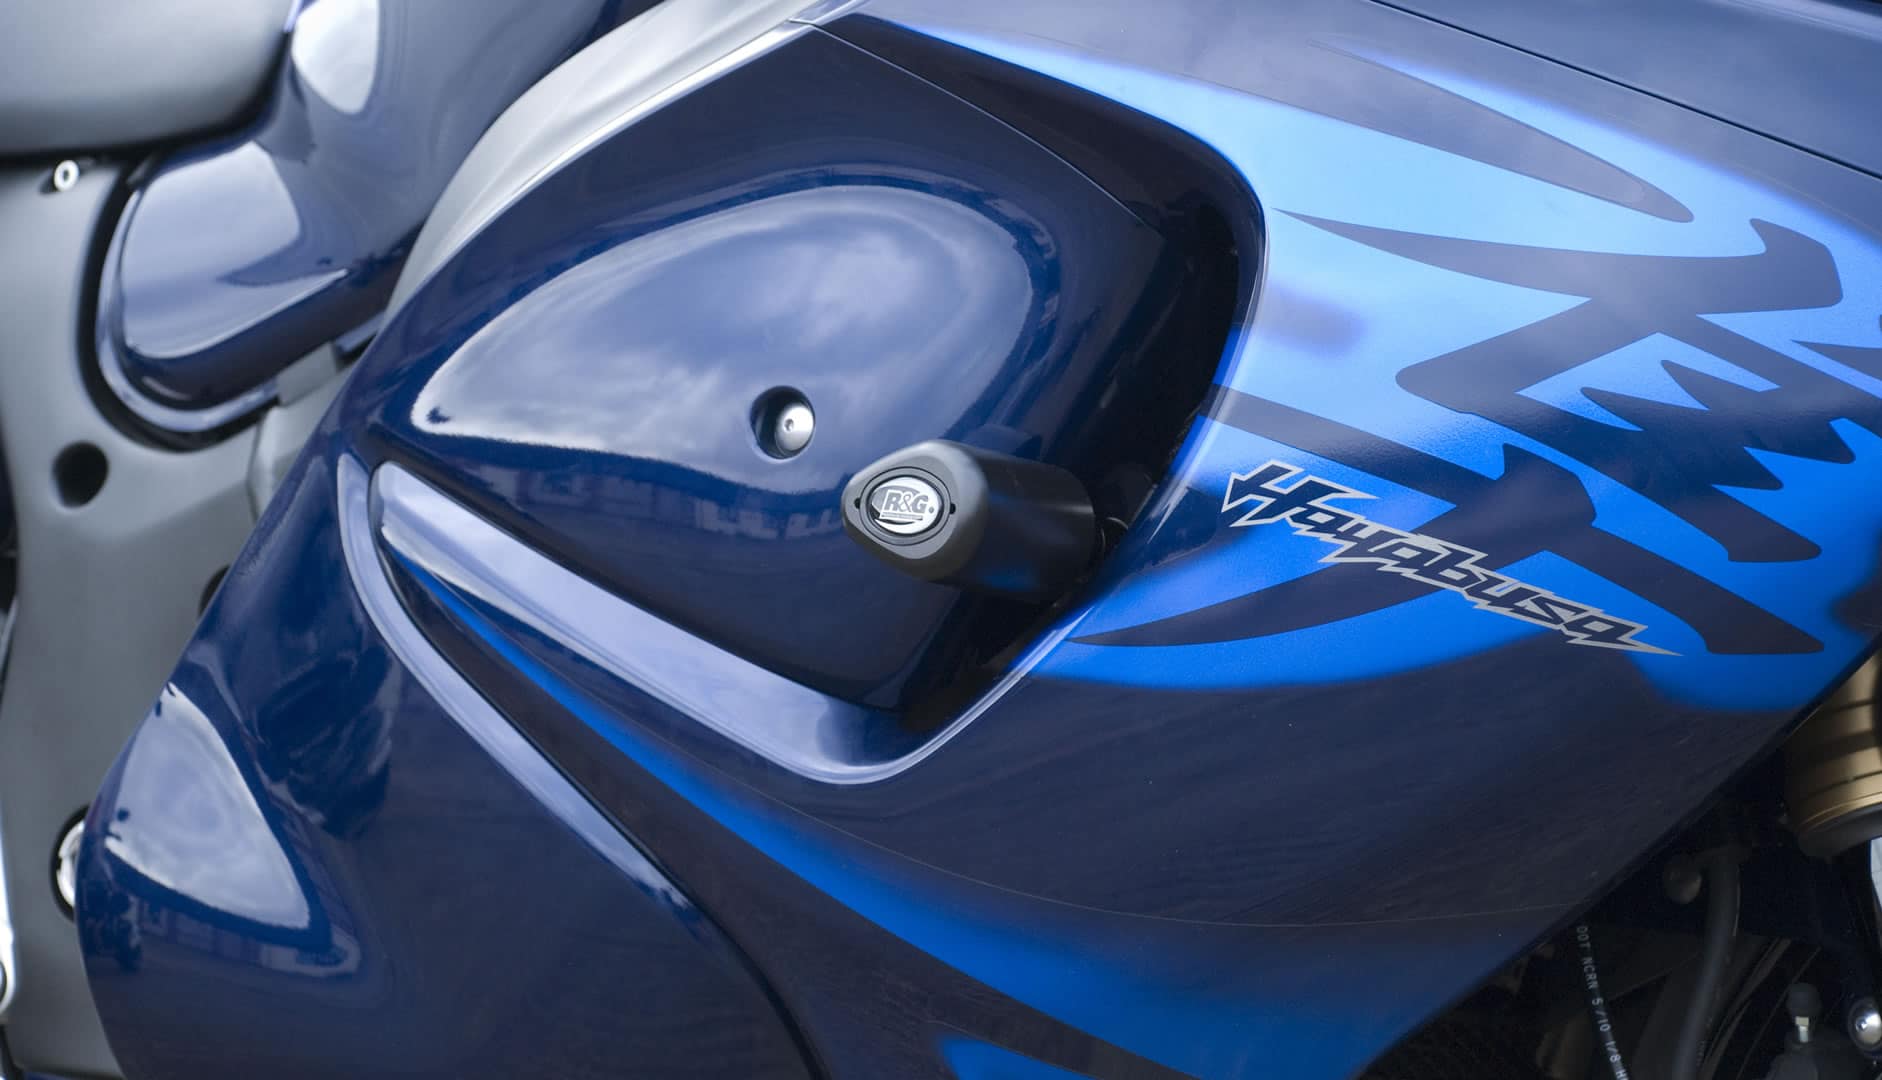 Cubre Puños Moto + Tope Anti Caida En Azul + Envio Gratis